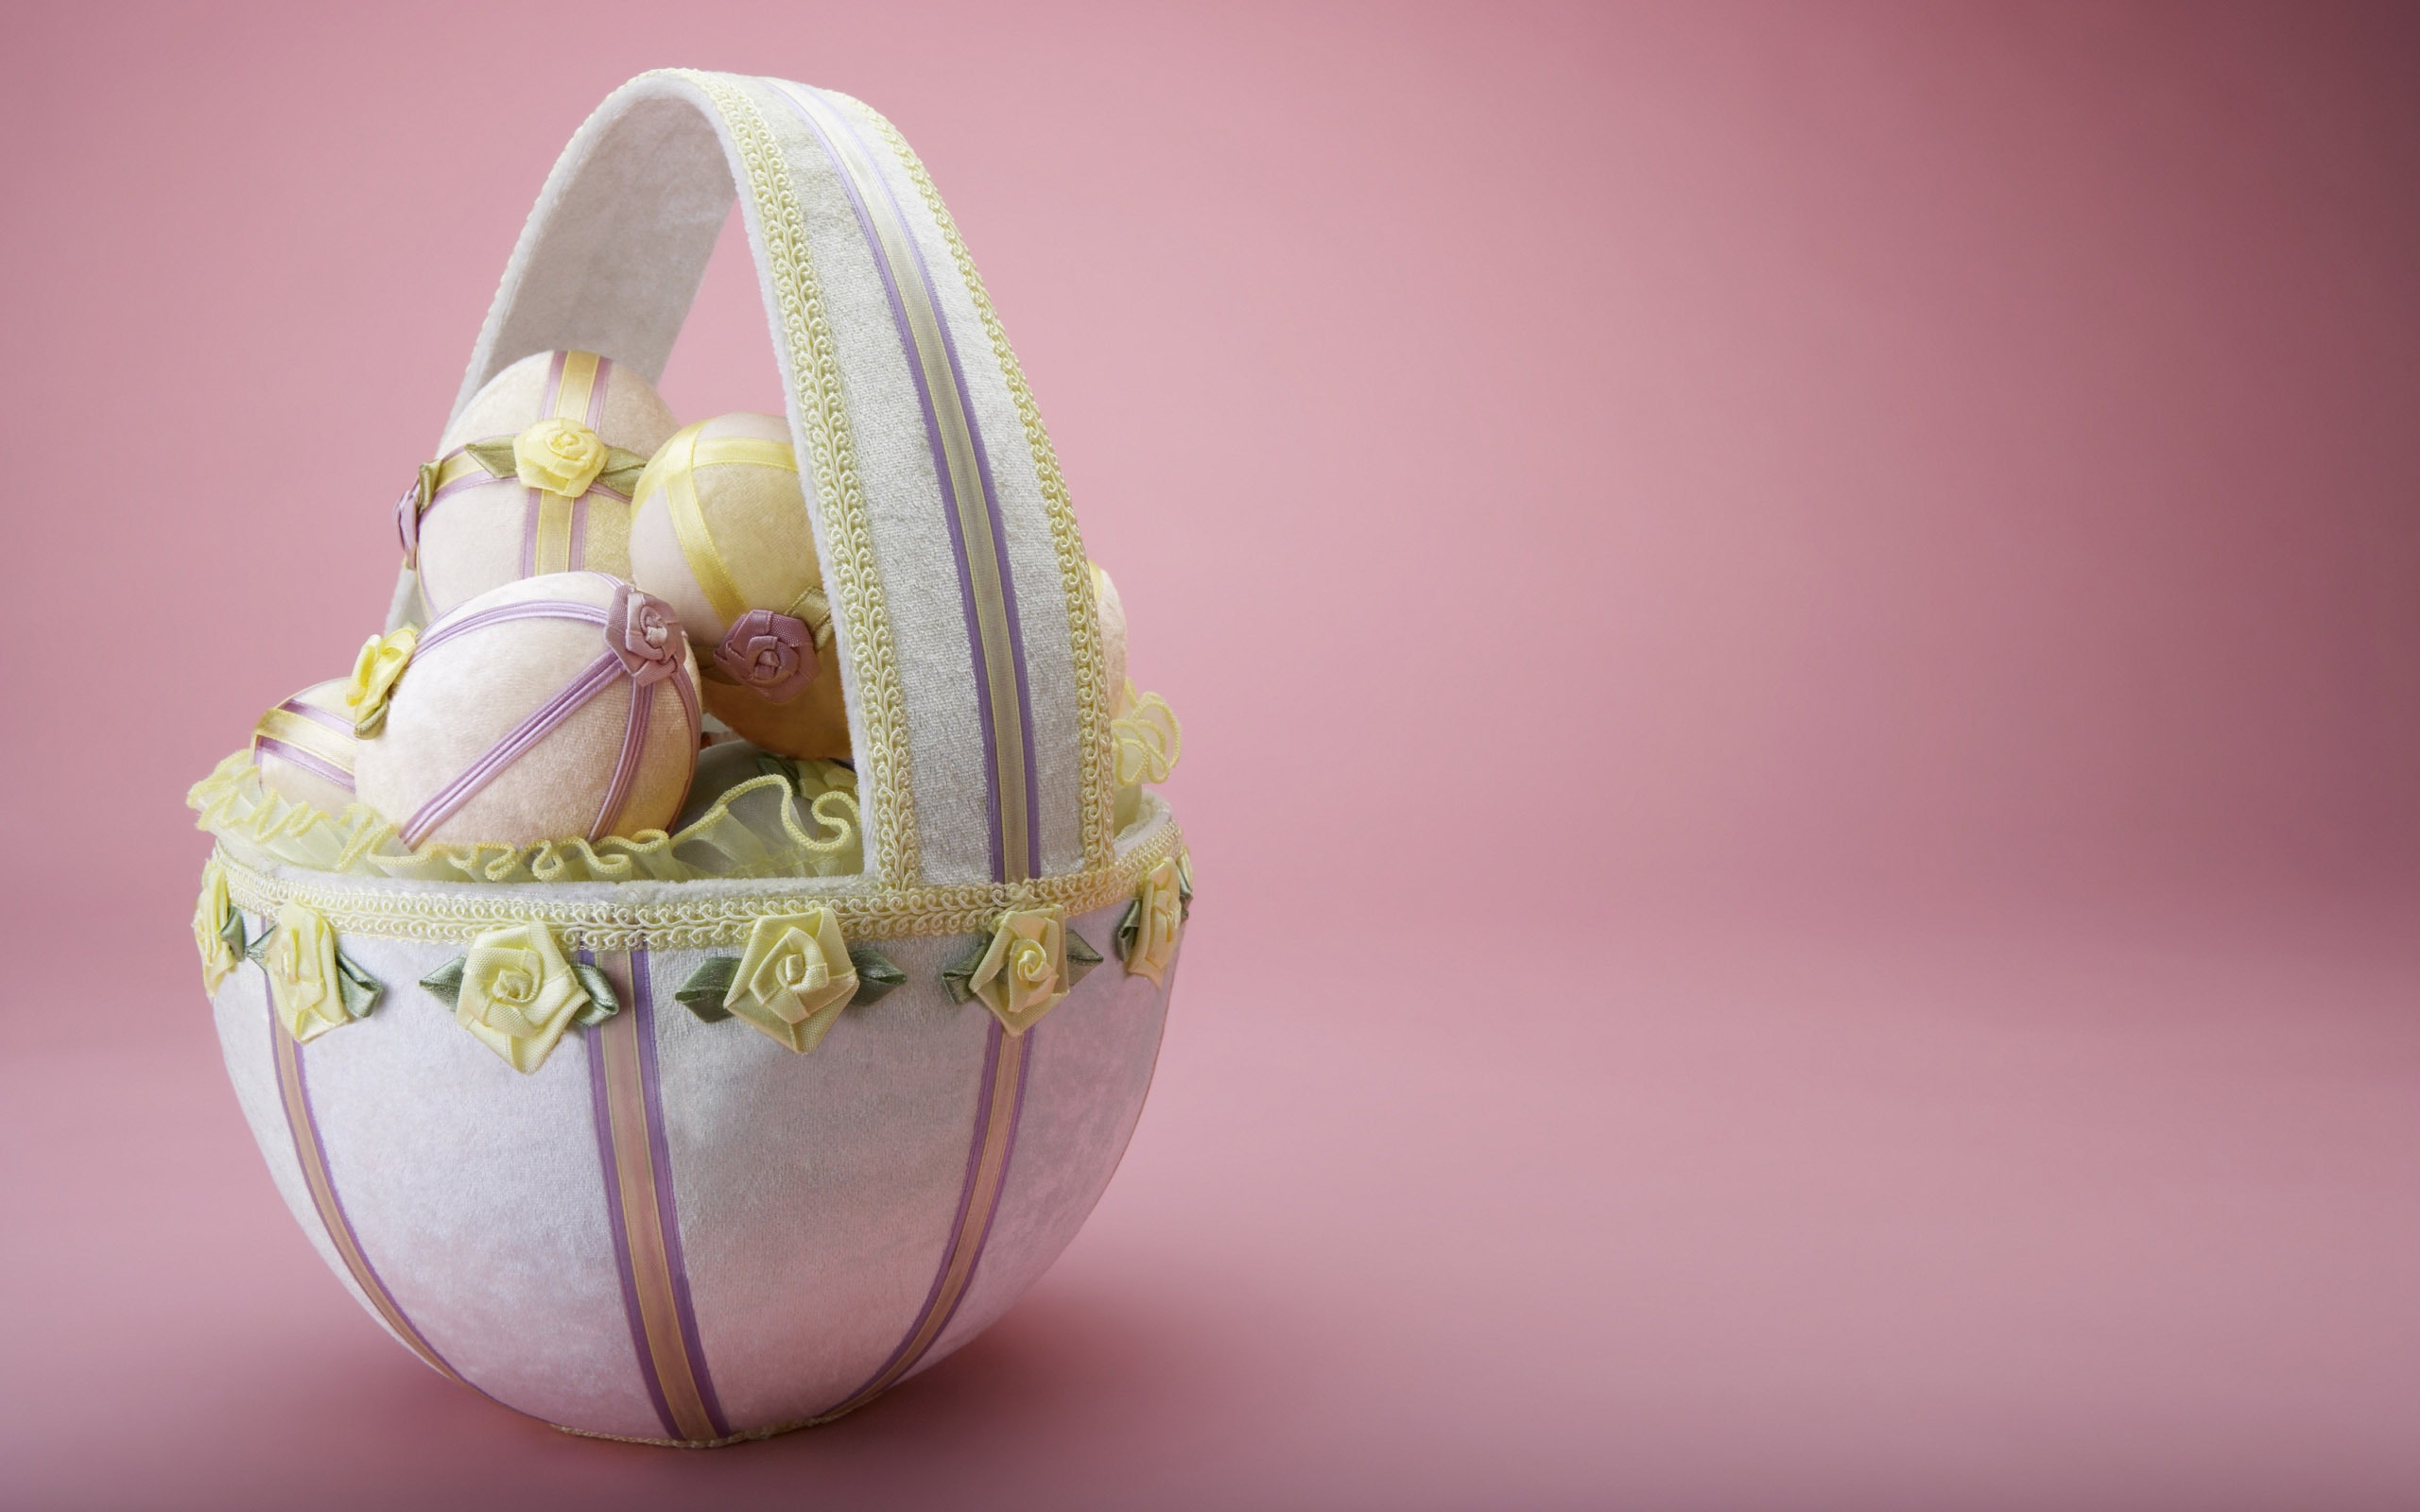 Basket Easter Egg Pastel 2560x1600